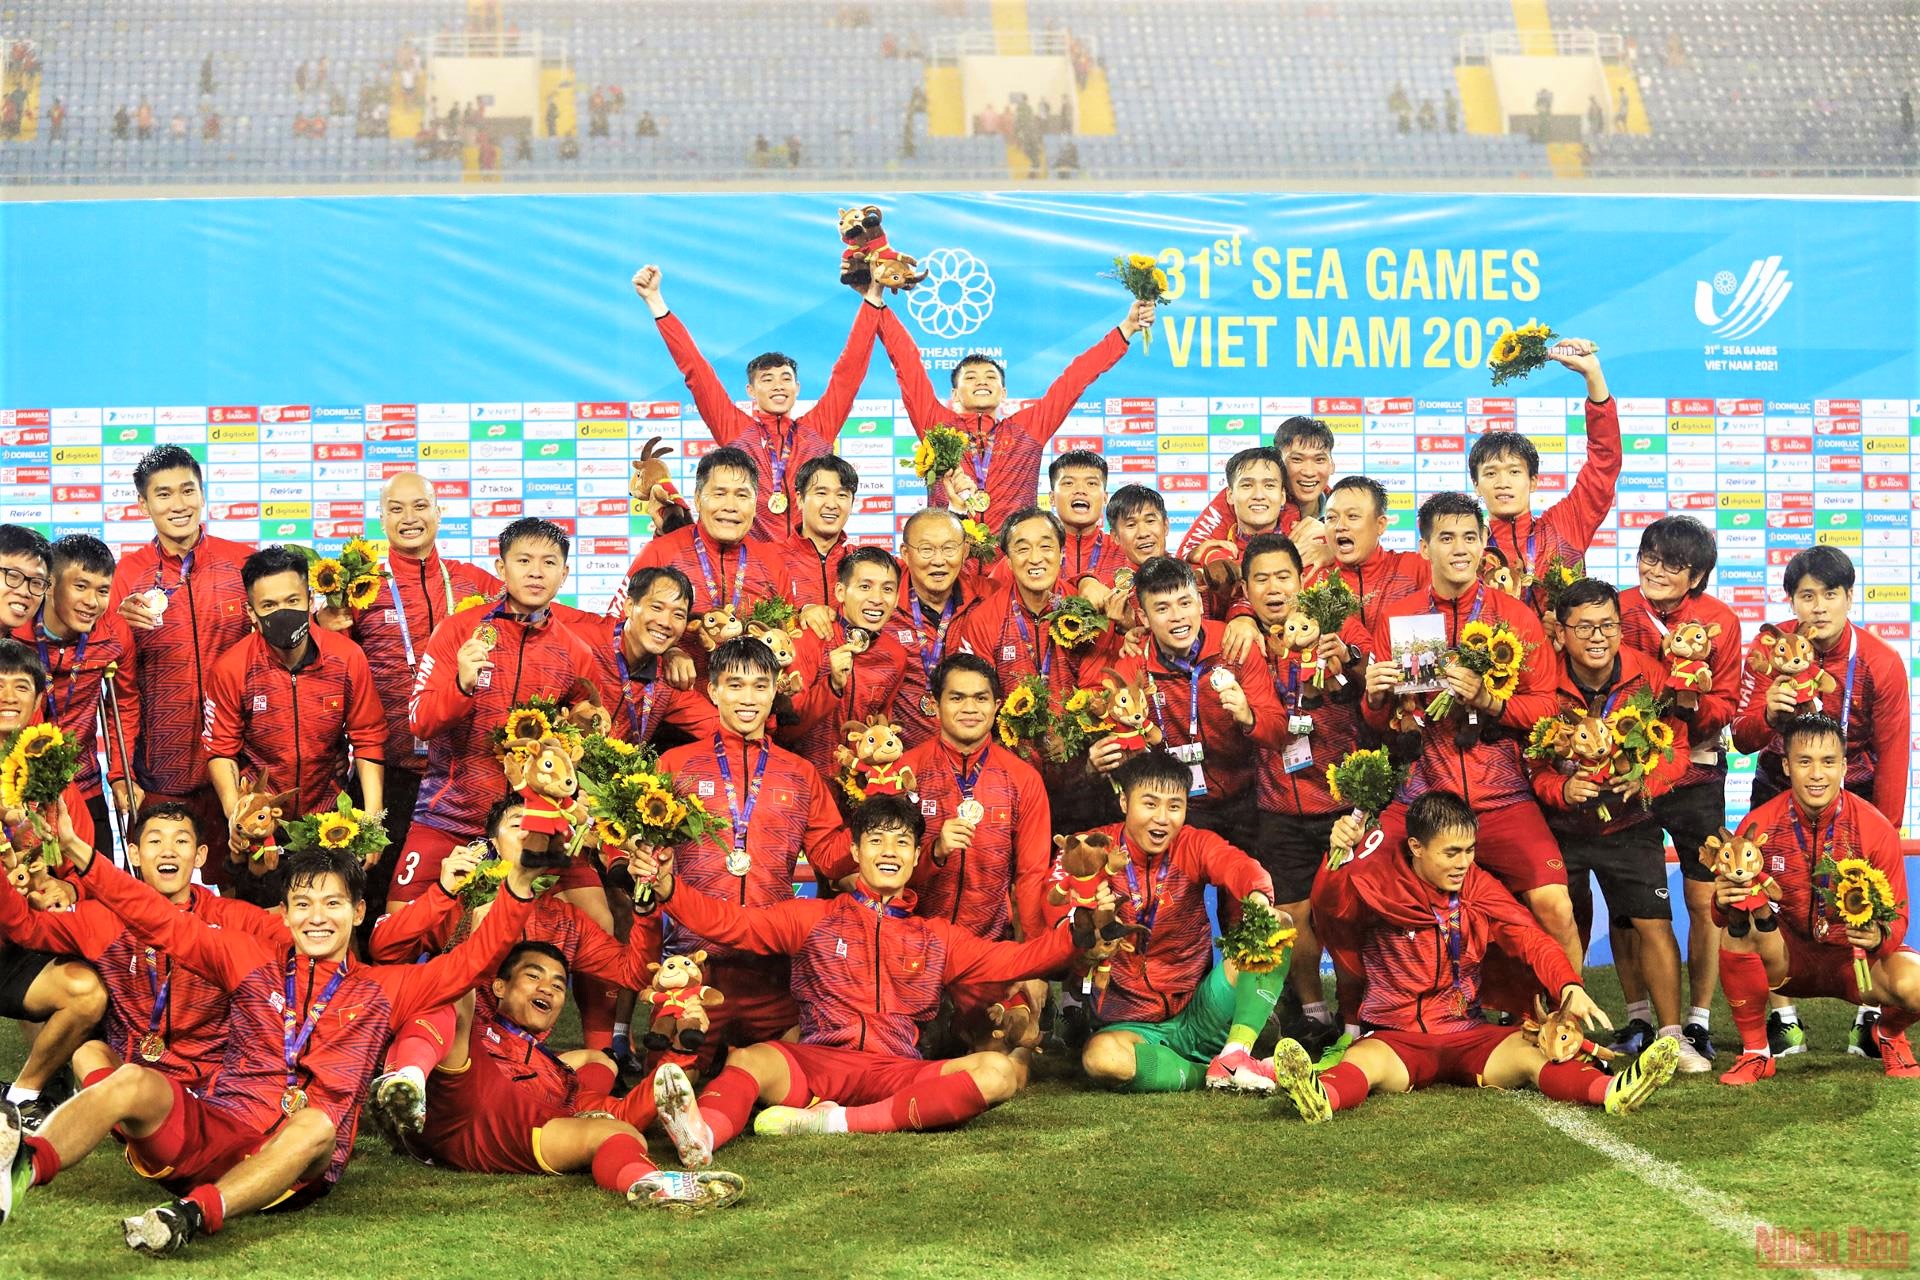 Huấn luyện viên người Hàn Quốc Park Hang-seo đã dẫn dắt đội tuyển bóng đá Nam đạt được những thành tích vang dội